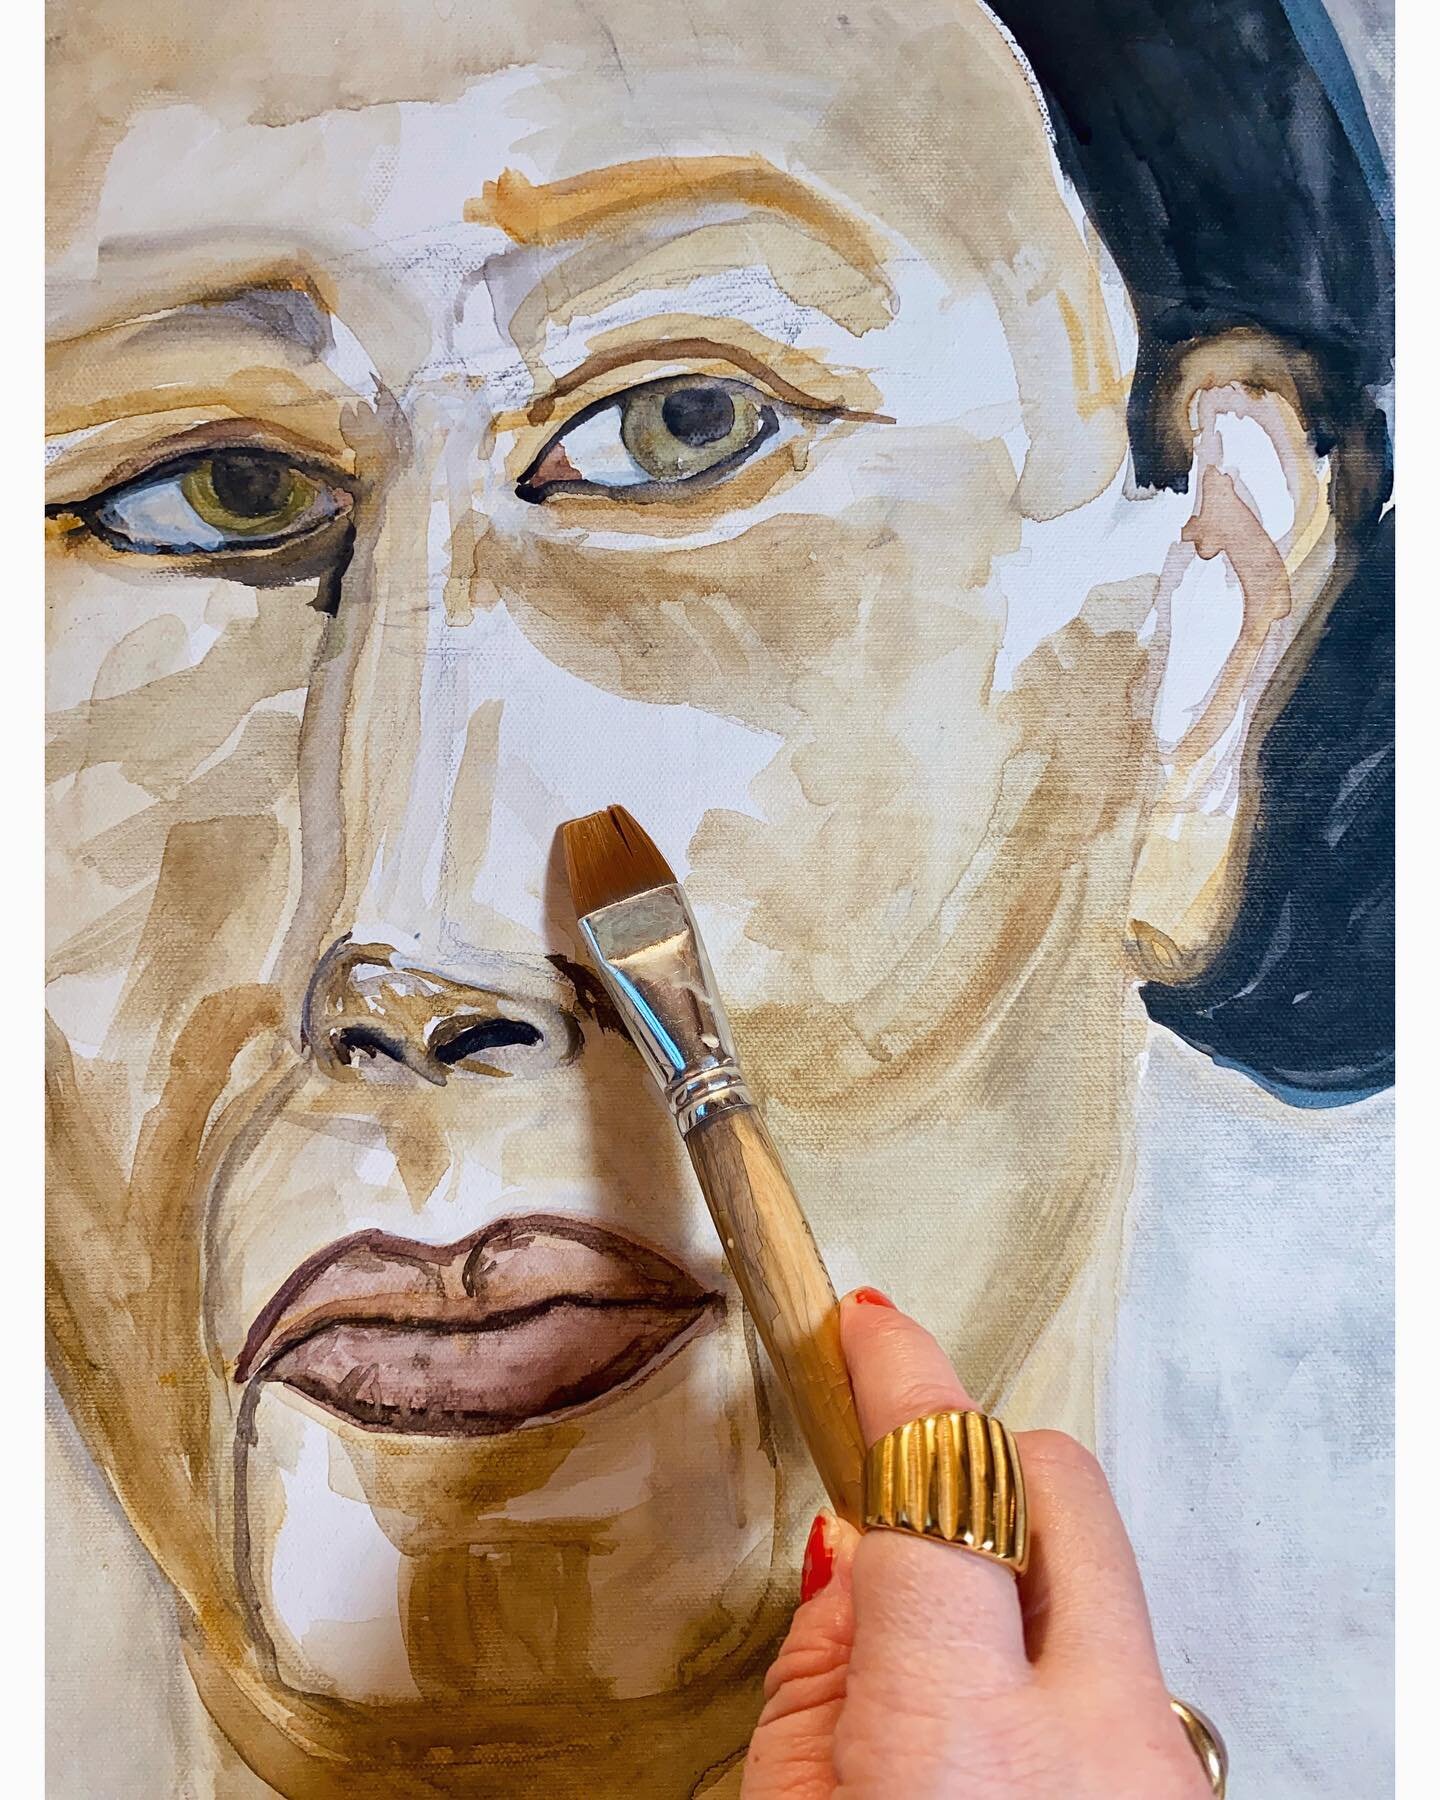 Returning. Forever.
.
.
.

#portrait #biggercanvases #watercolor #woman #workoncanvas #canvasses #women #wisdom #beauty #stories #contemporaryportrait #workinprogress #detail #wort #painter #artist